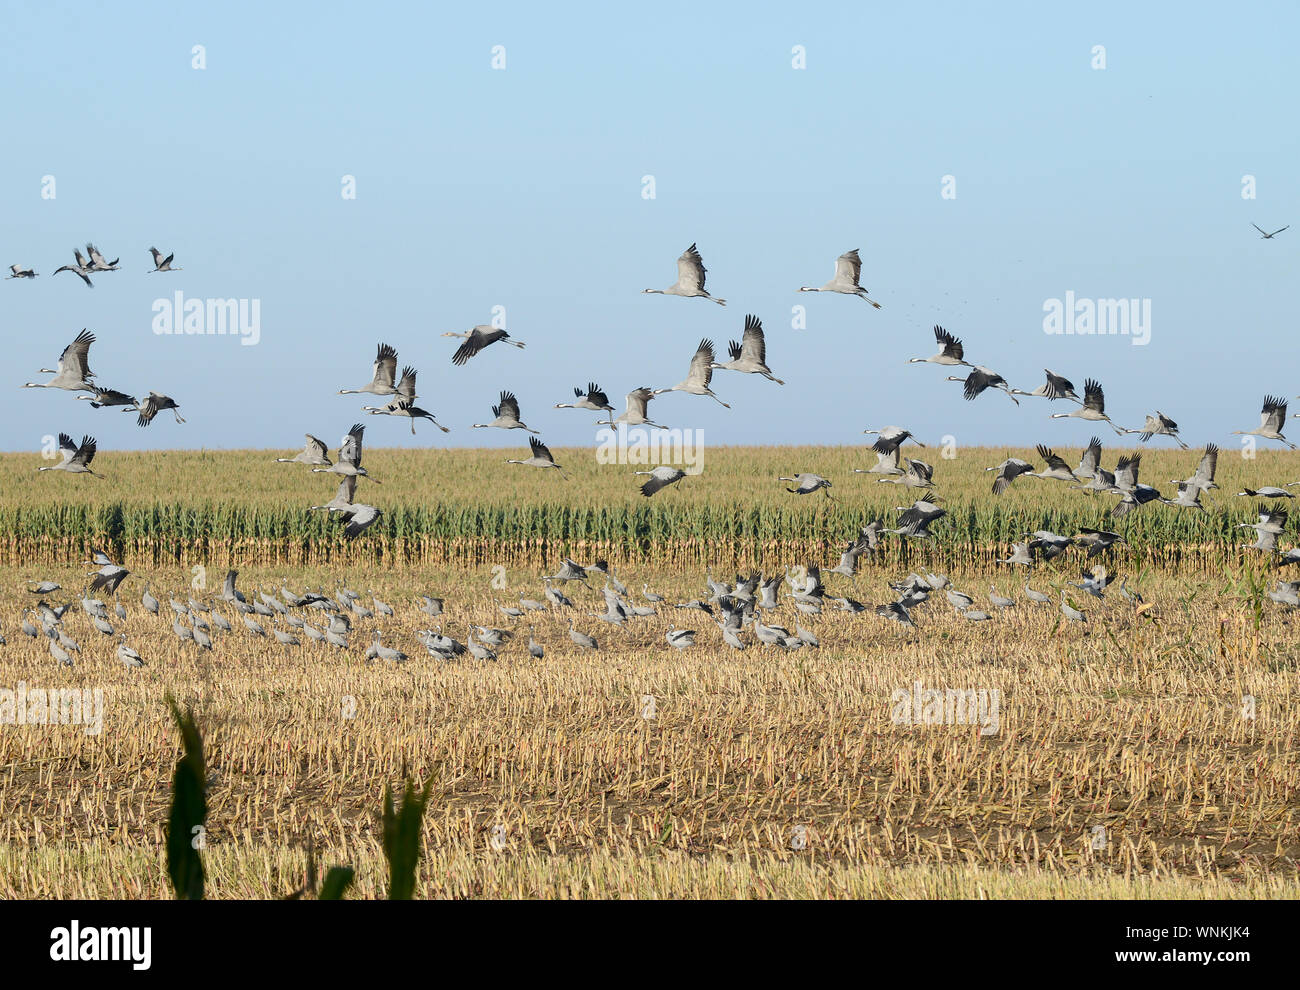 GERMANIA, Ruegen, gru su campo di mais in autunno, le gru sono uccelli migratori e fermarsi qui sulla loro migrazione annuale / DEUTSCHLAND, Rügen, Sagard, Kraniche auf Maisfeld im Herbst Foto Stock